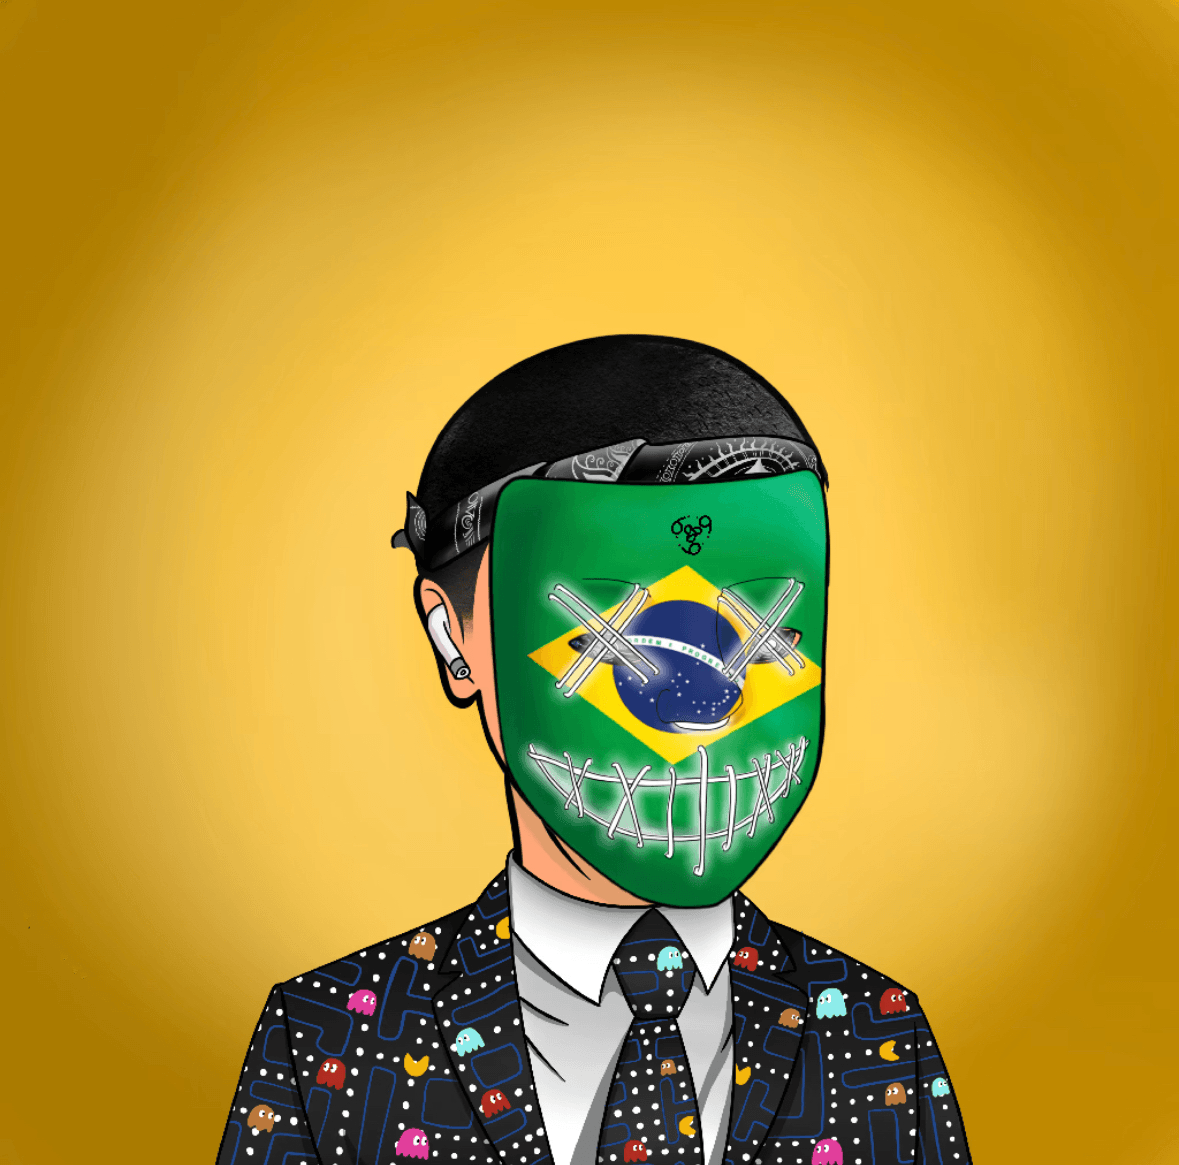 BrazilianApe